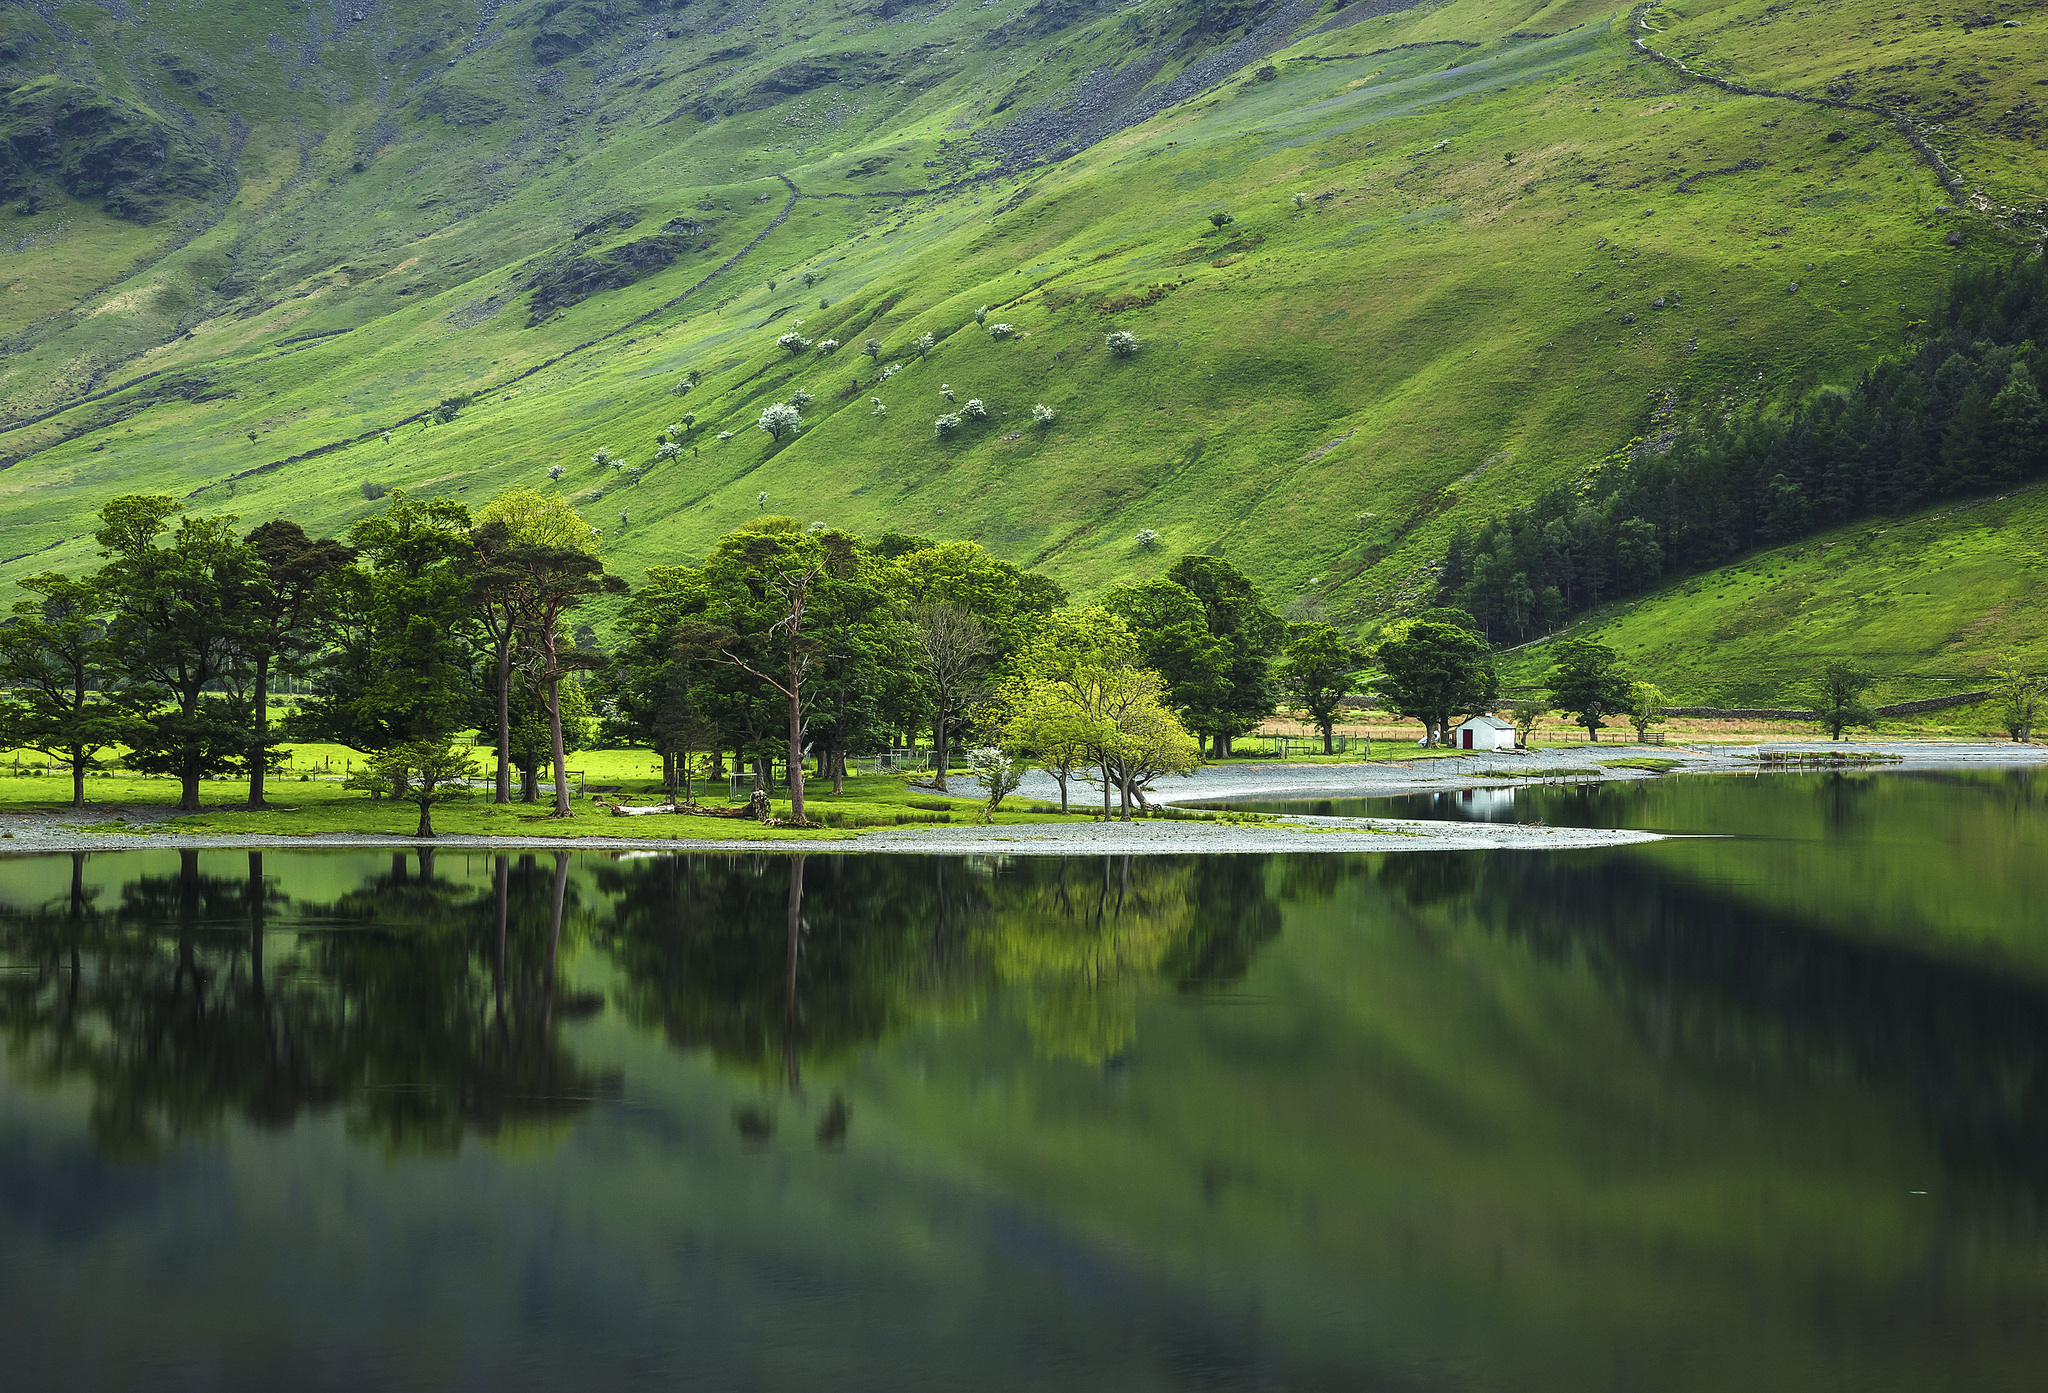 Hd Lake District National Park - HD Wallpaper 